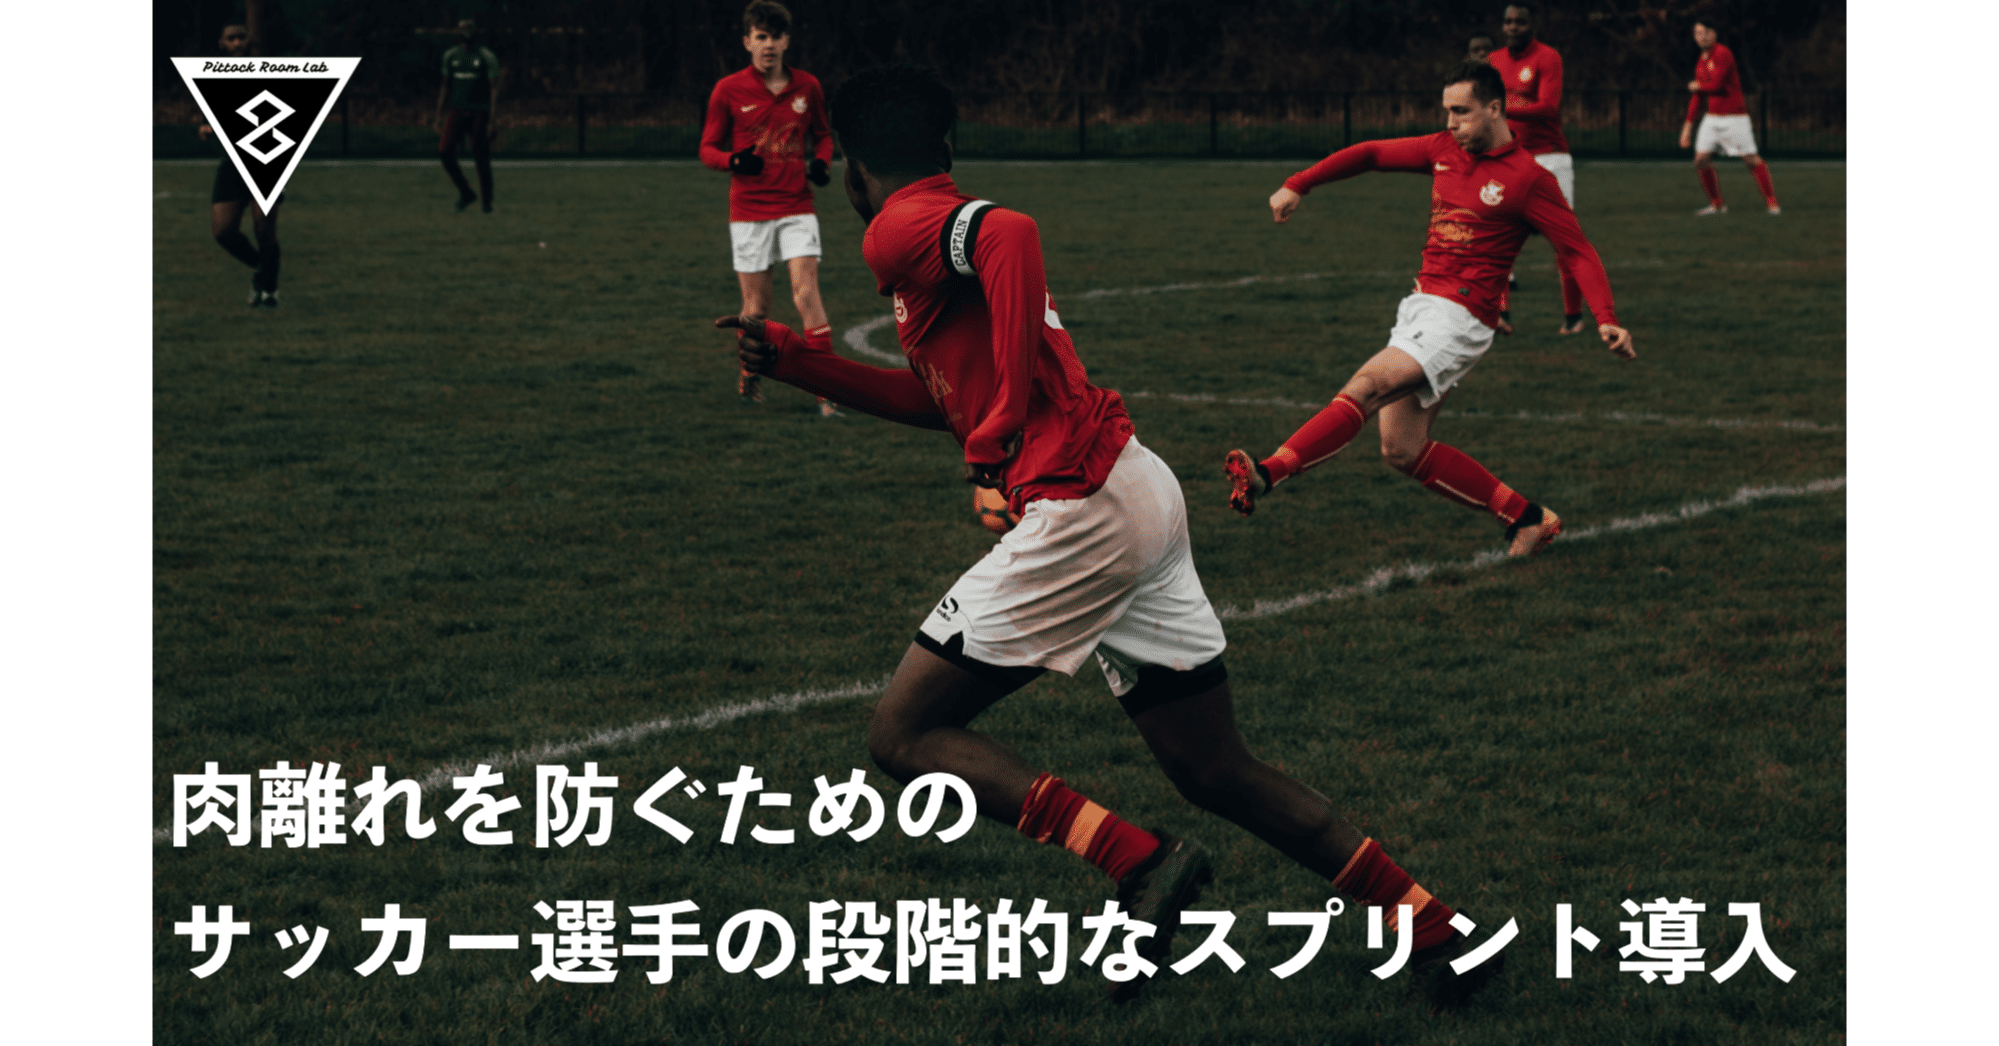 肉離れを防ぐためのサッカー選手の段階的なスプリントの導入 加速走からスプリントへ Keisuke Matsumoto フィジカルコーチ Note